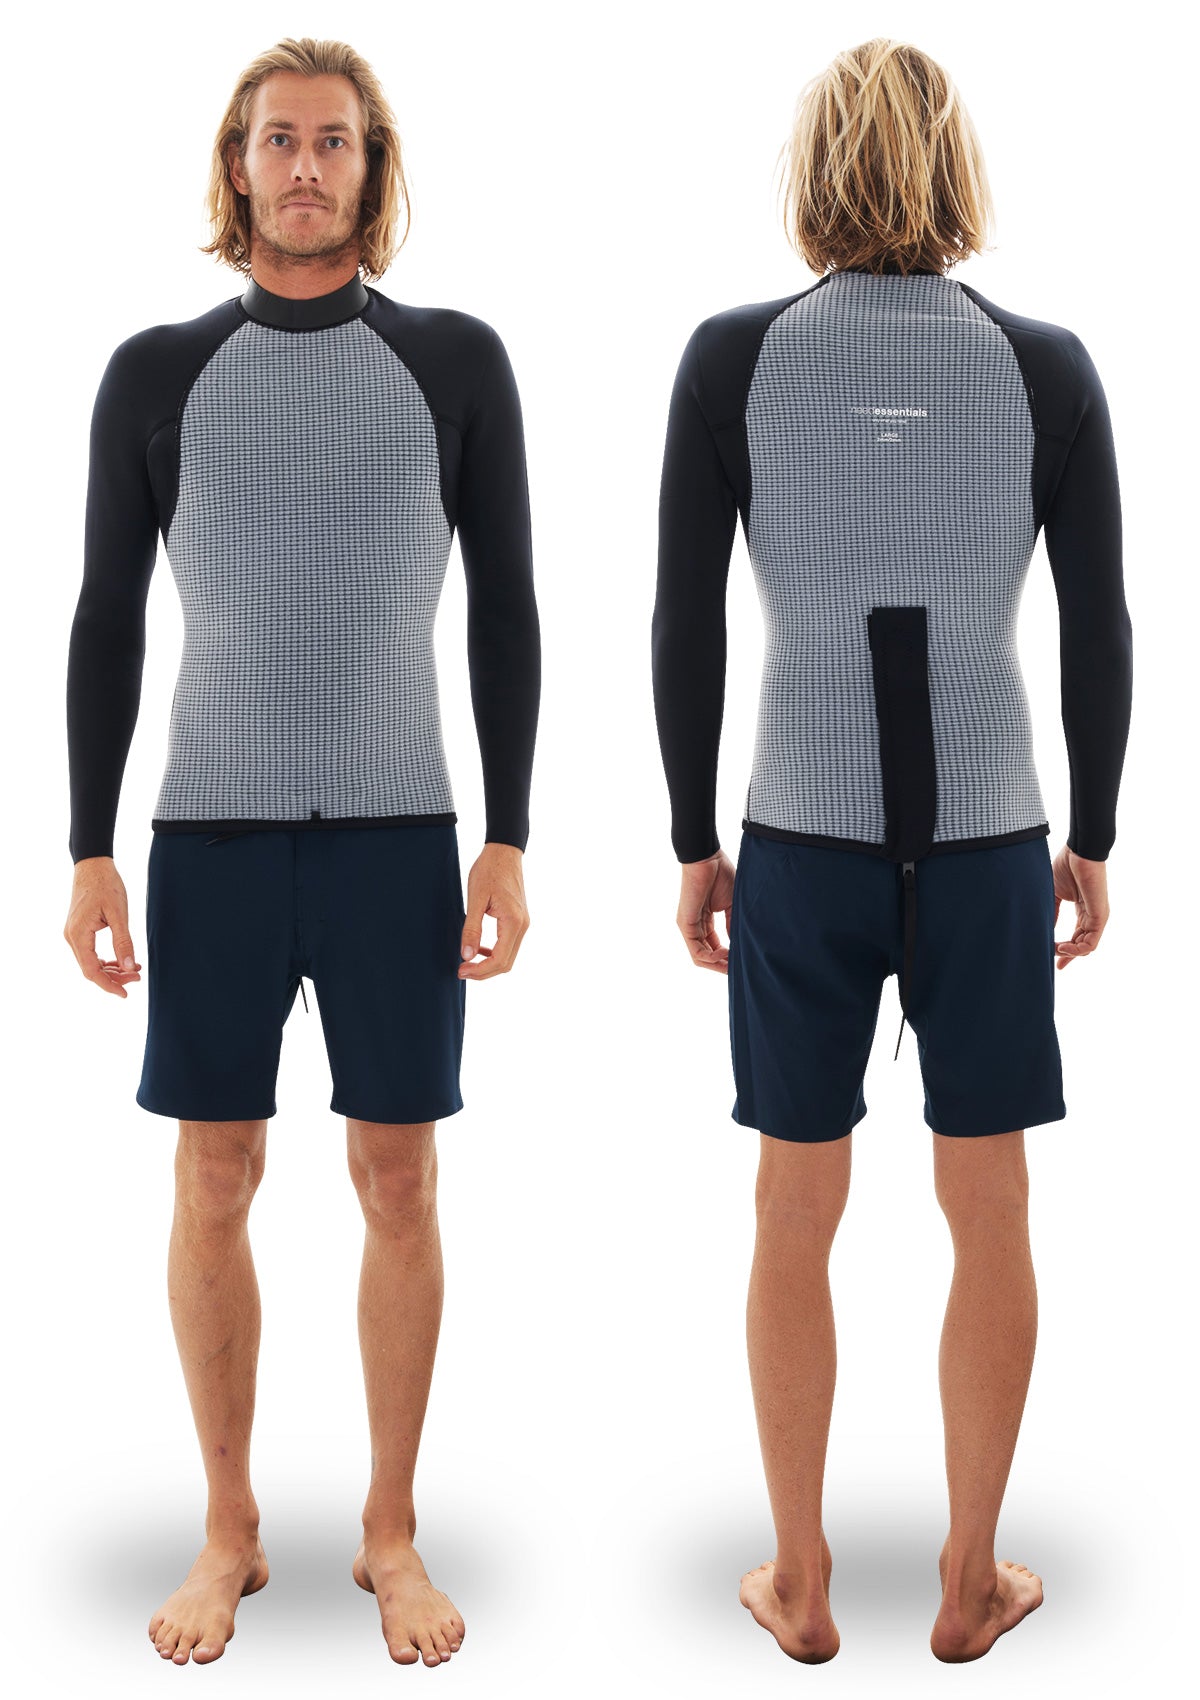 needessentials Back Zip Thermal Jacket summer wetsuit vest torren martyn